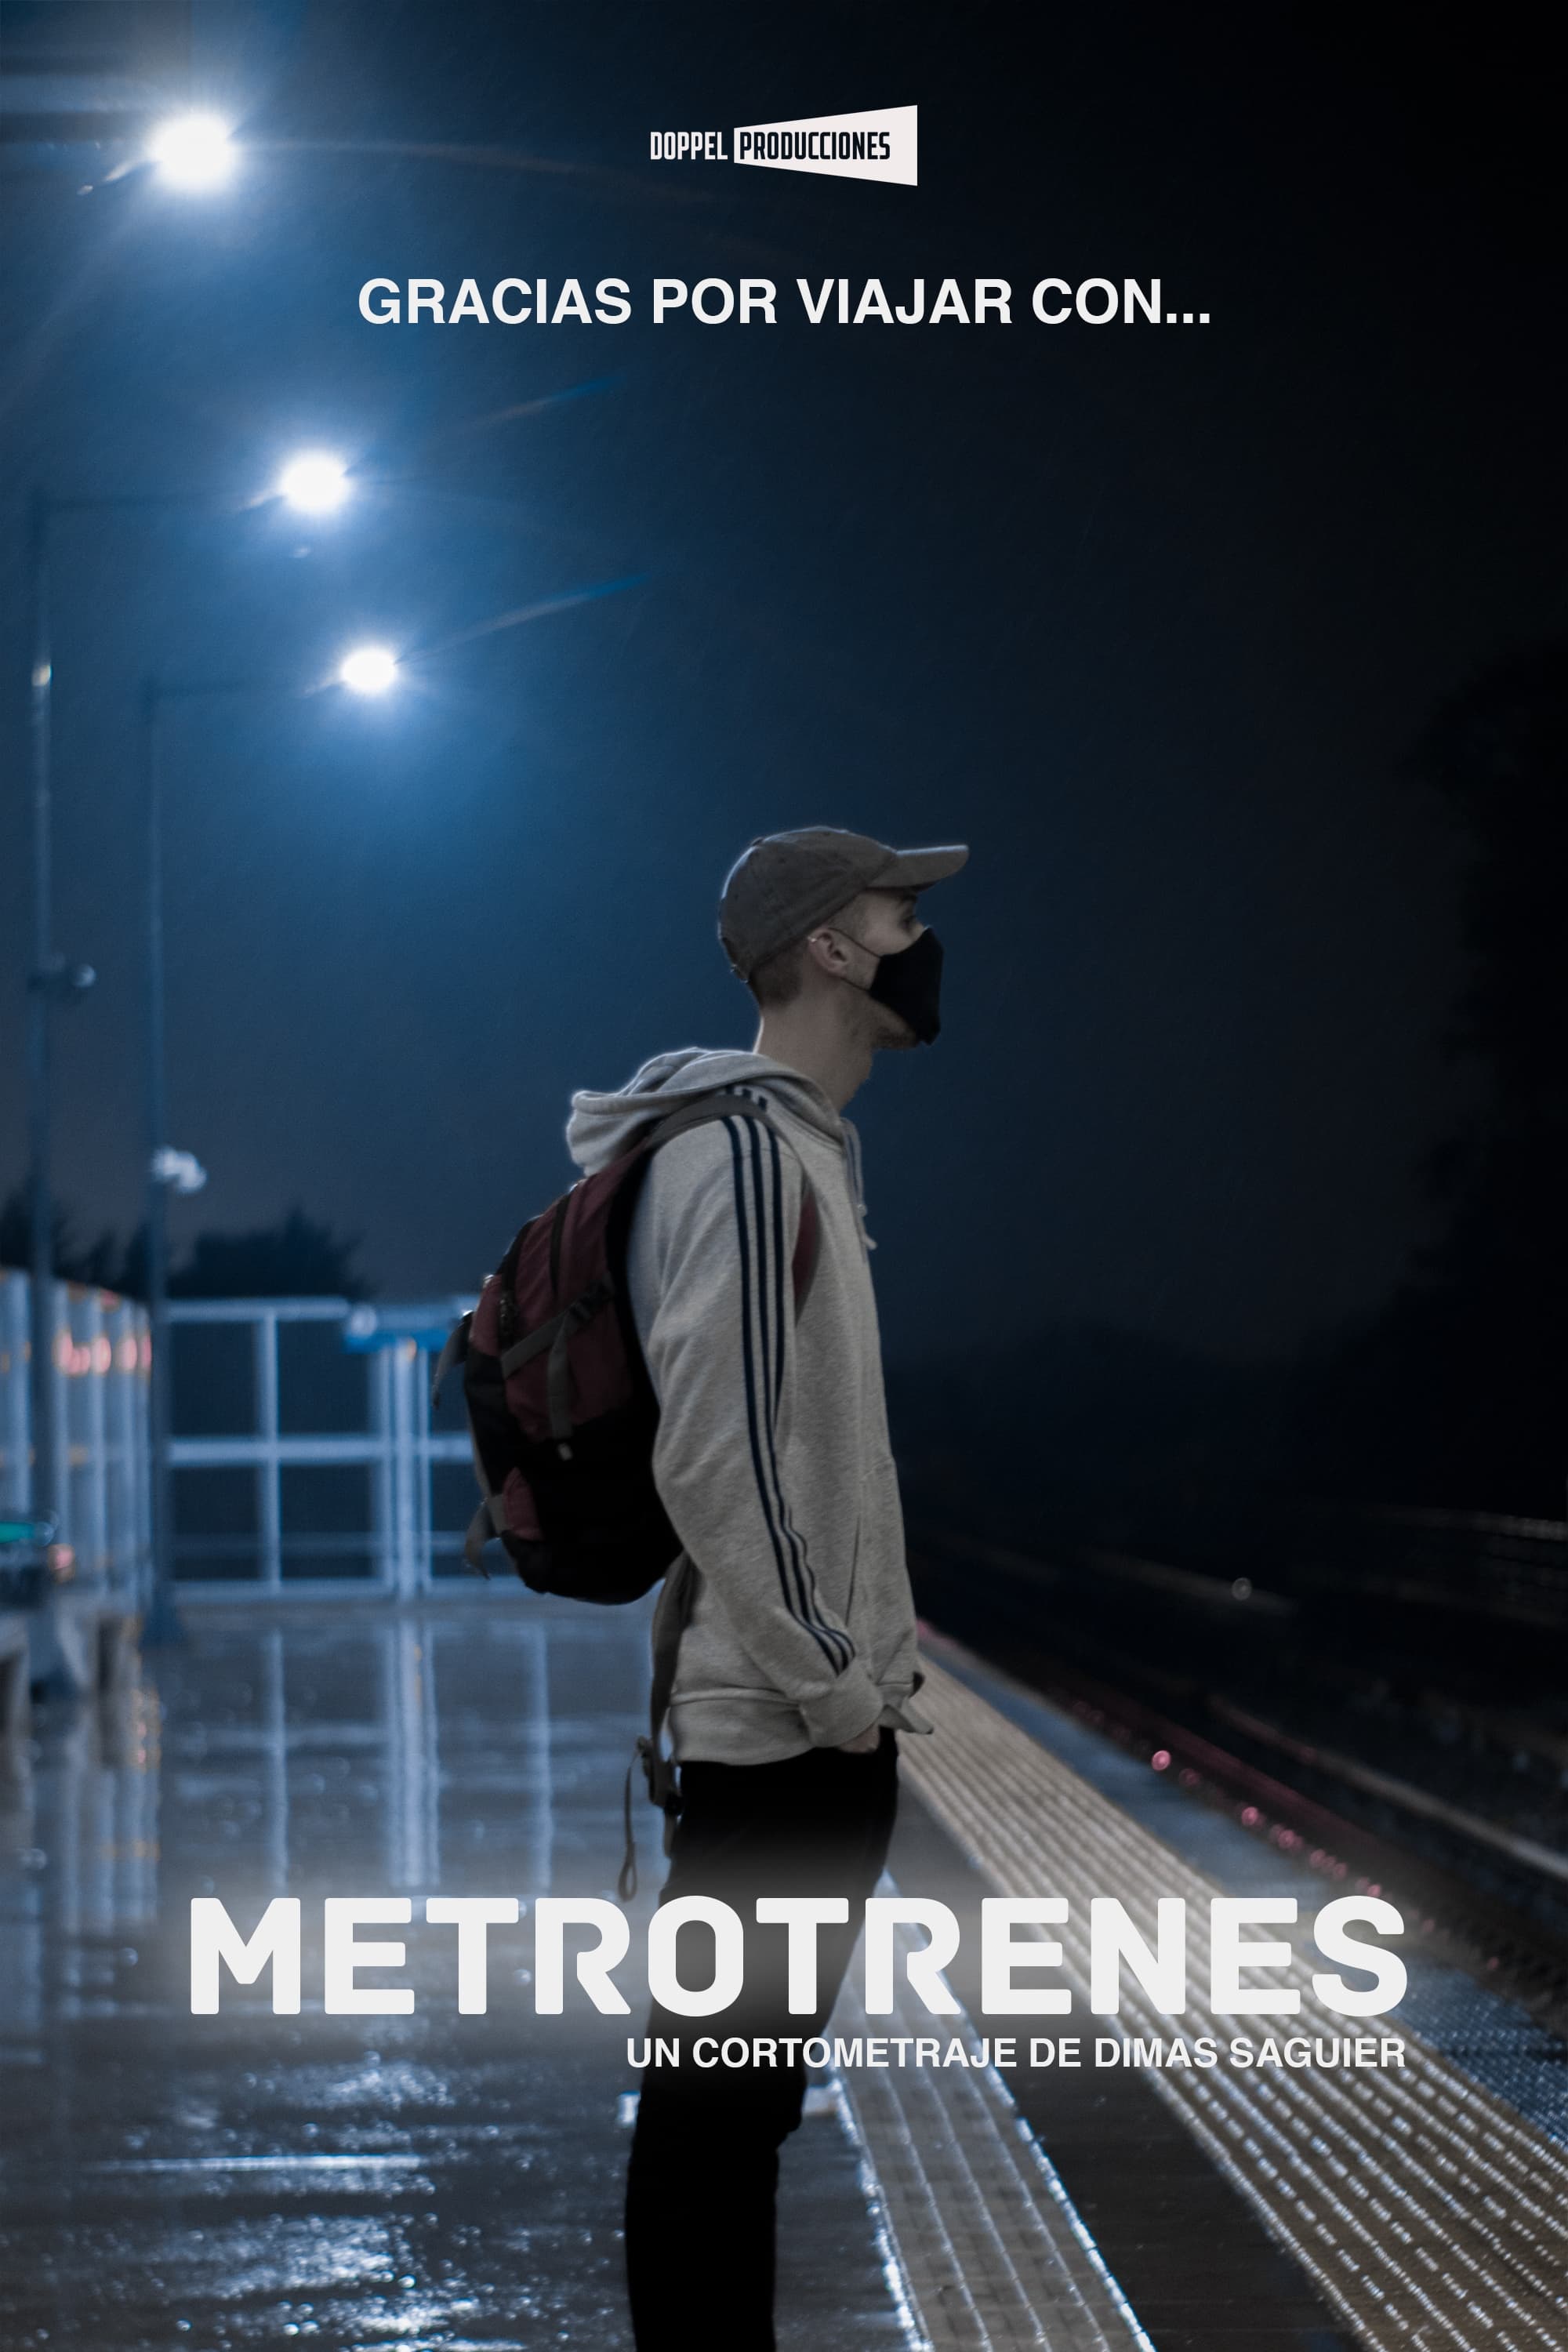 Metrotrains